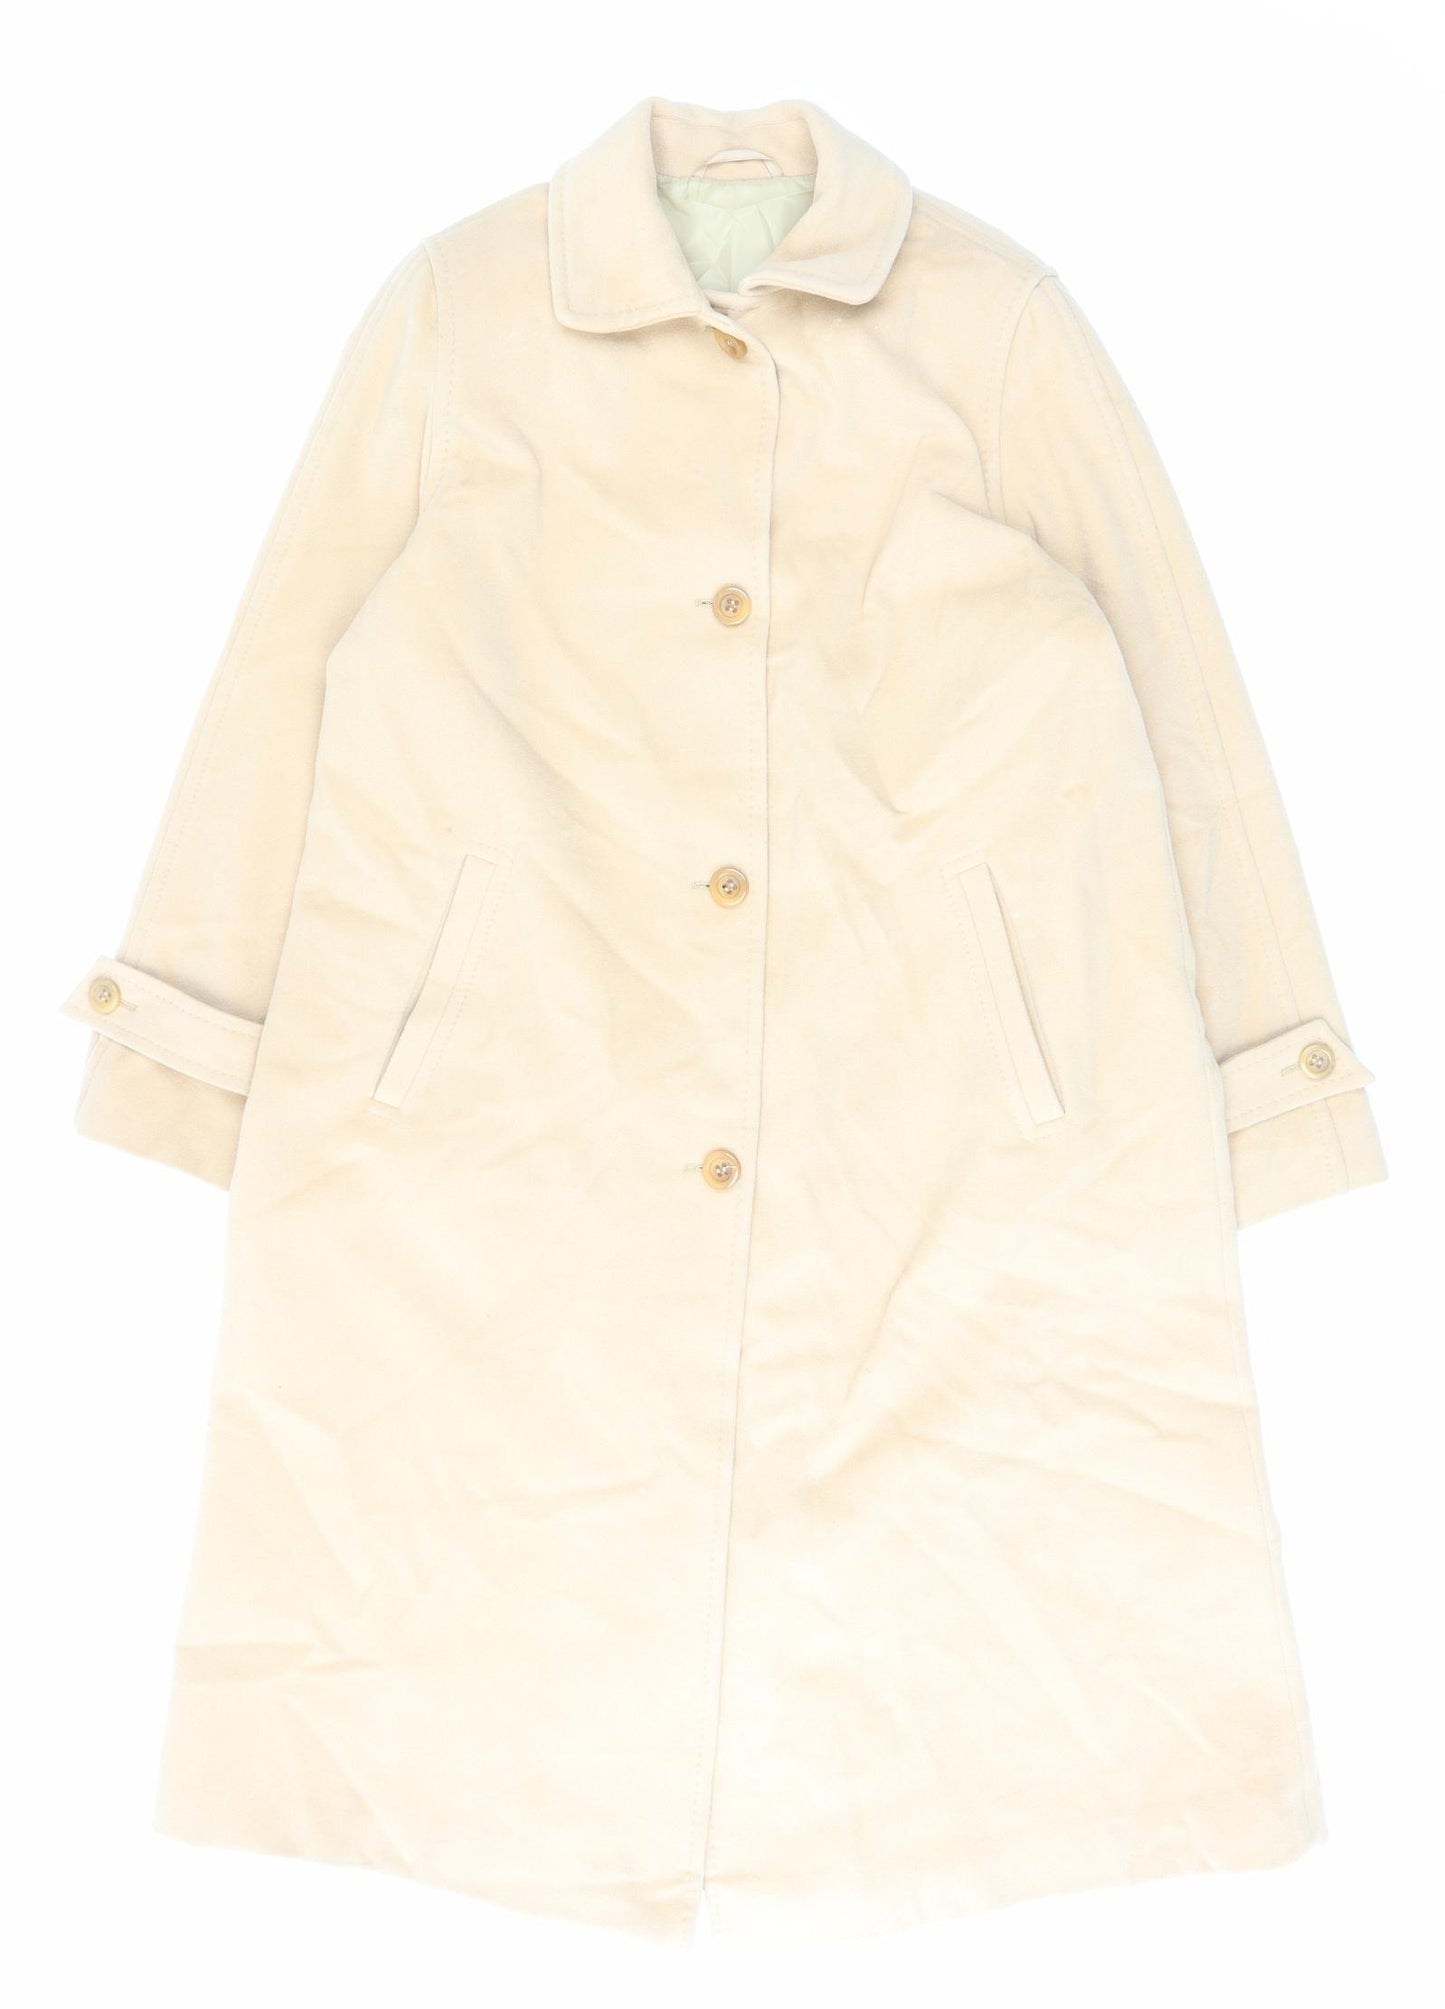 Goldix Womens Beige Overcoat Coat Size 14 Button